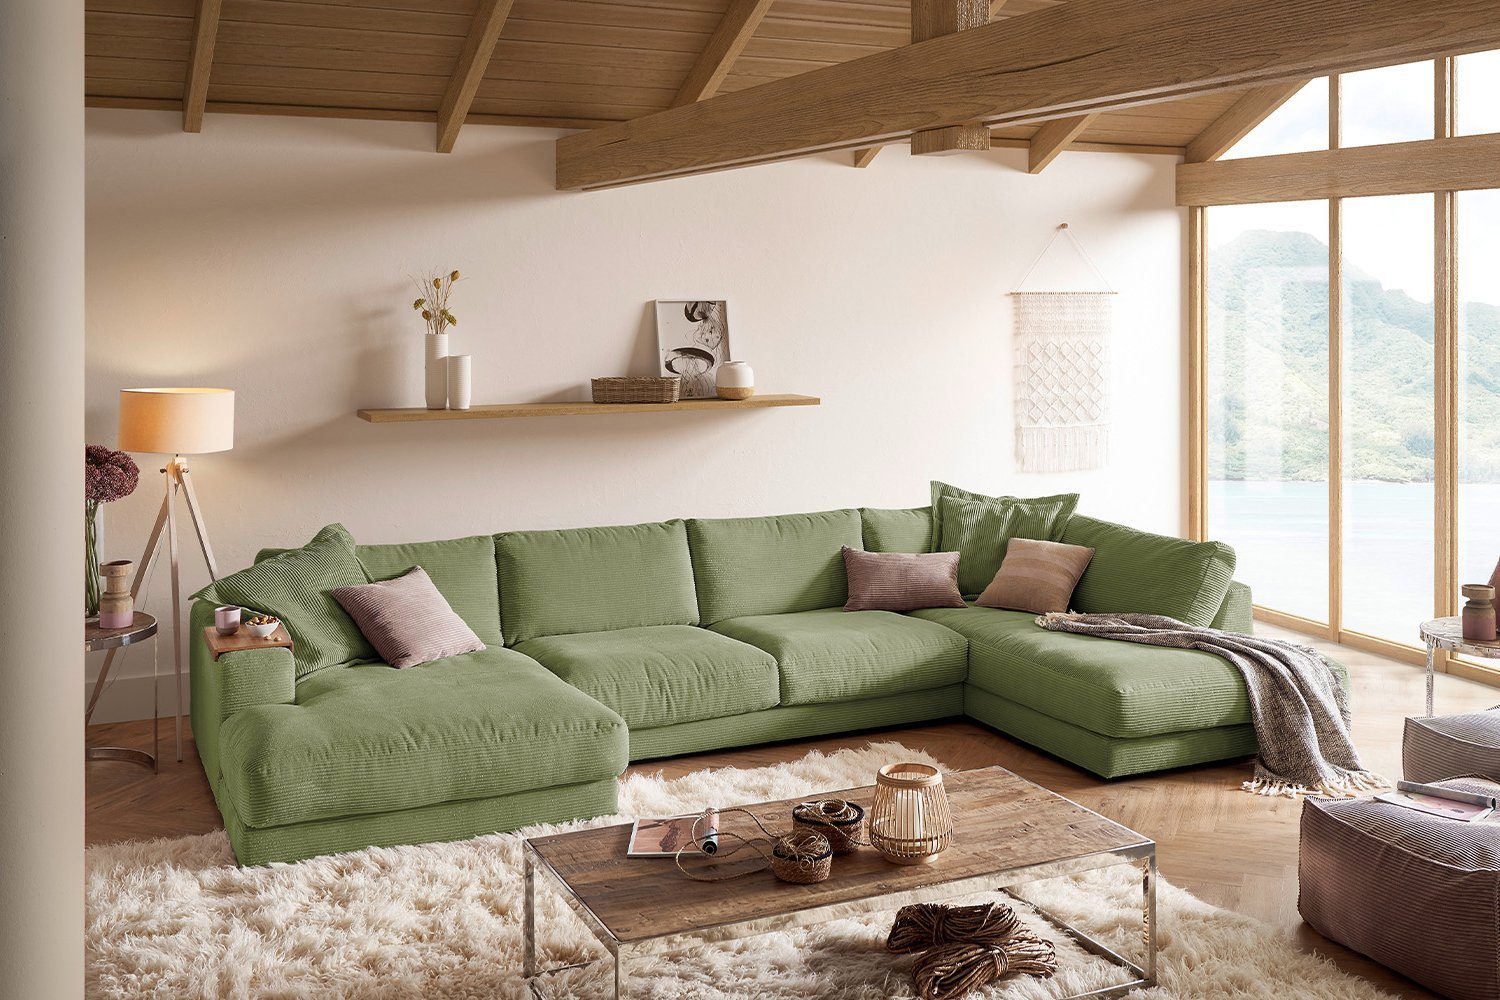 KAWOLA Wohnlandschaft MADELINE, Sofa U-Form Cord, Longchair rechts od. links, versch. Farben olivgrün